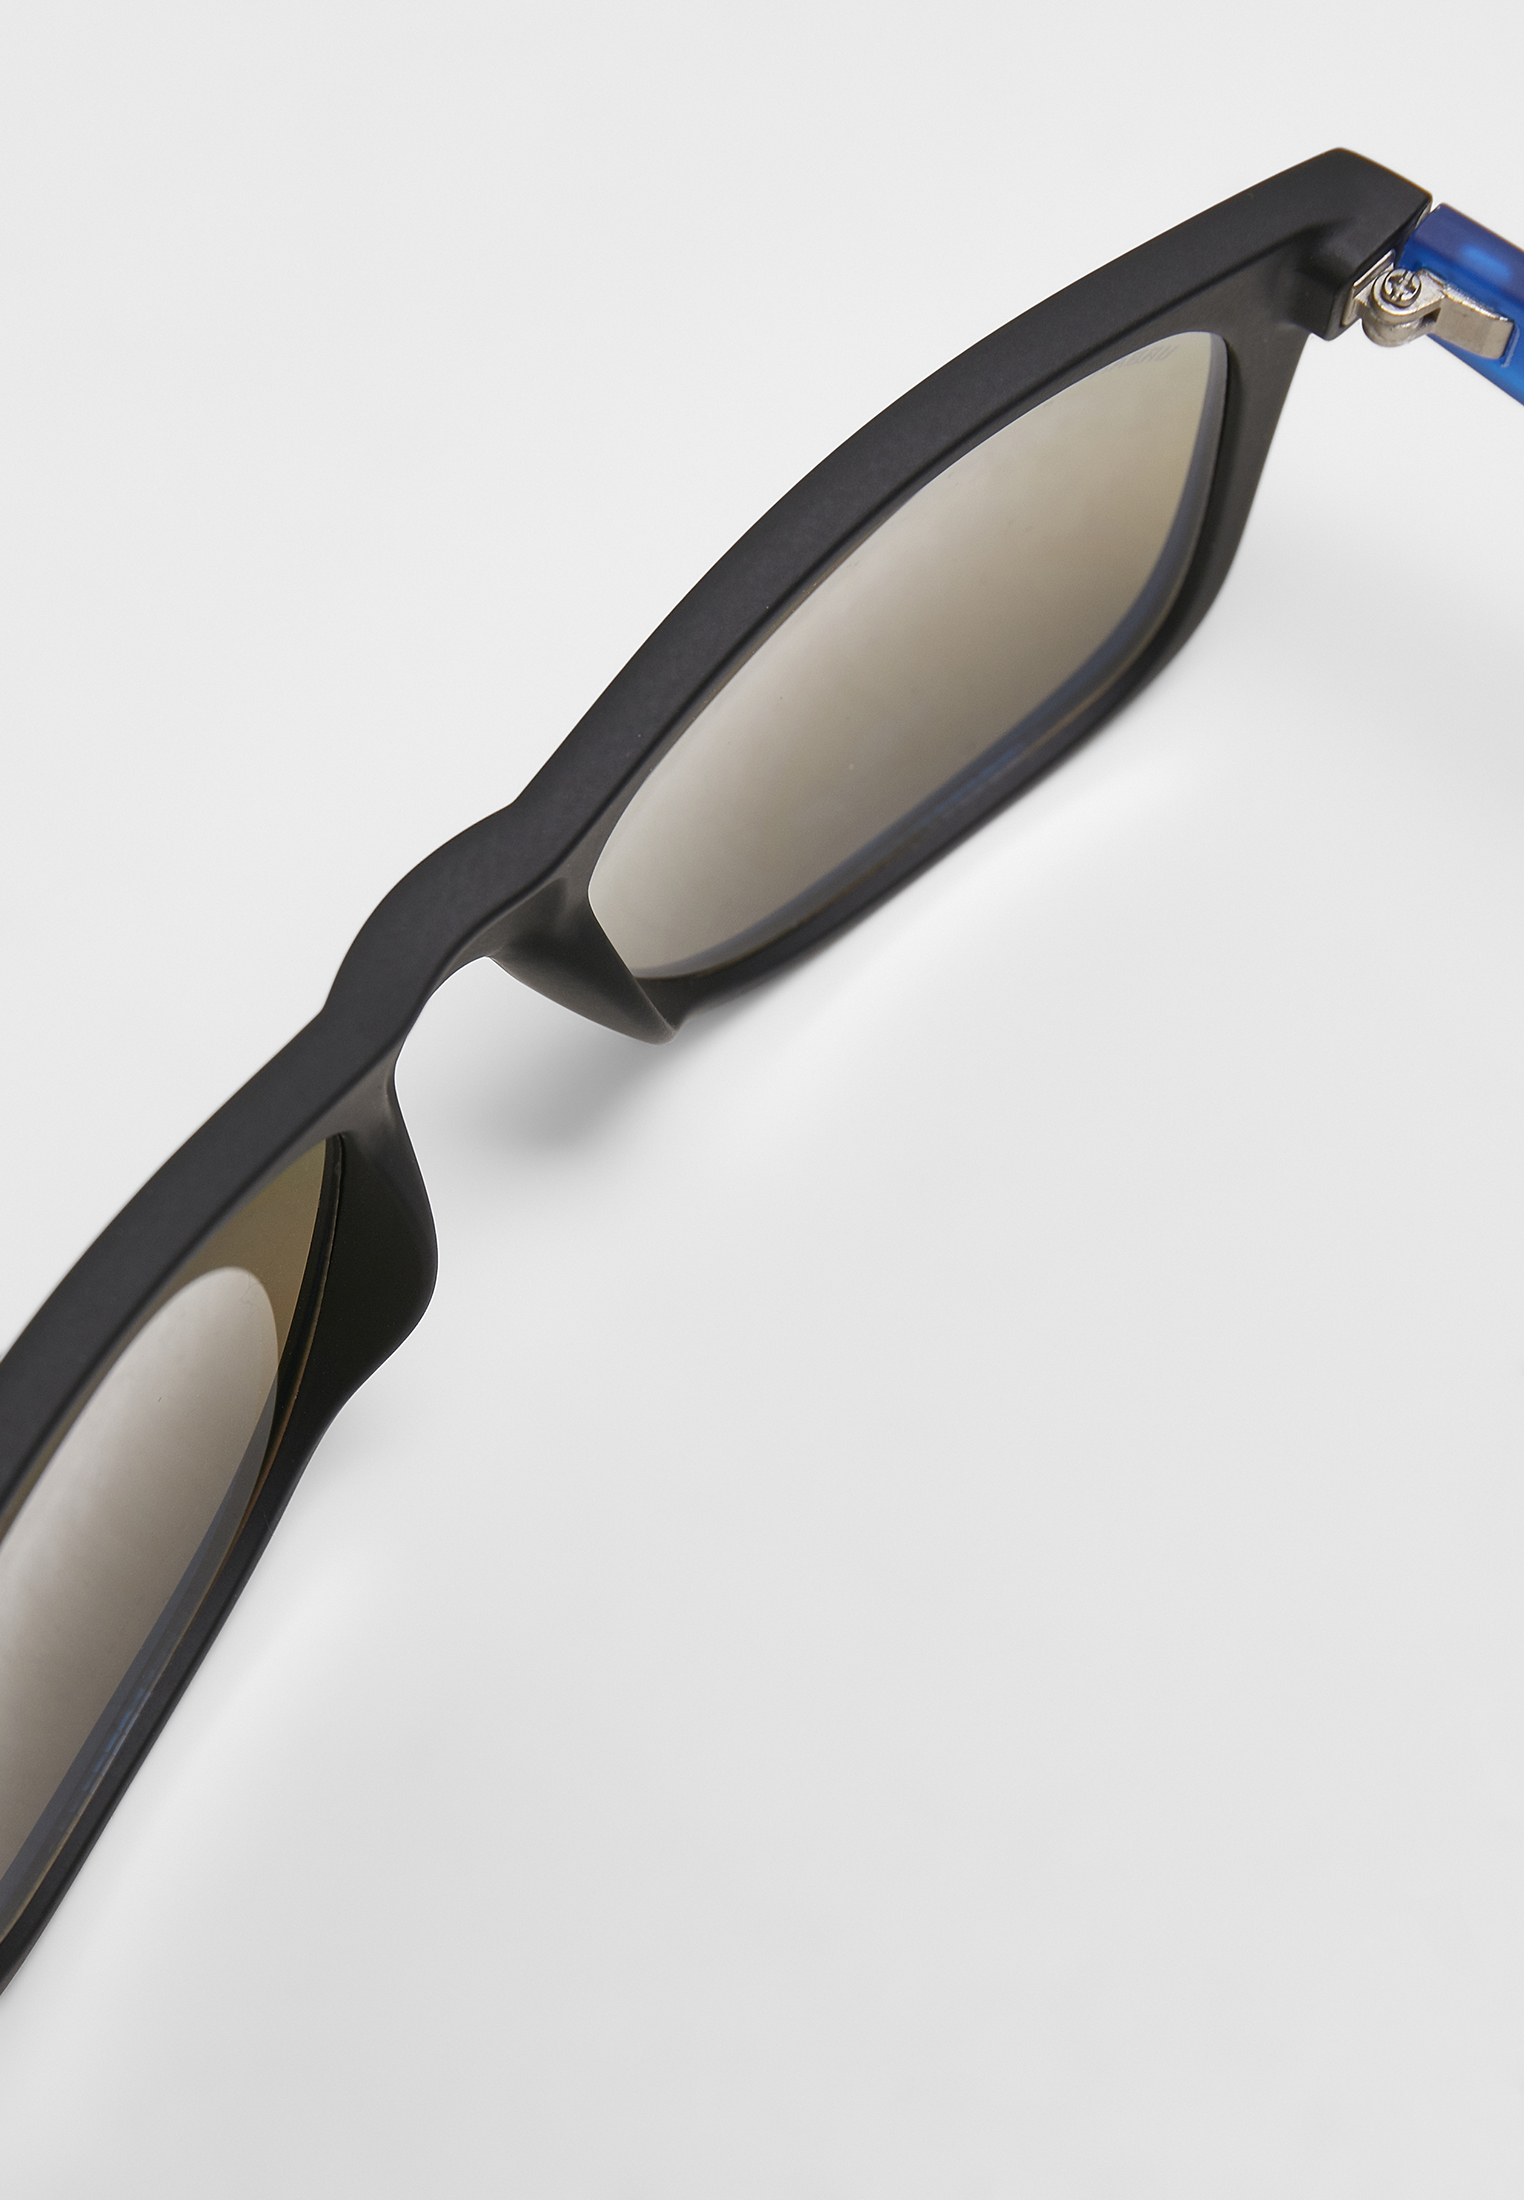 Sonnenbrillen Sunglasses Likoma Mirror UC in Farbe black/blue